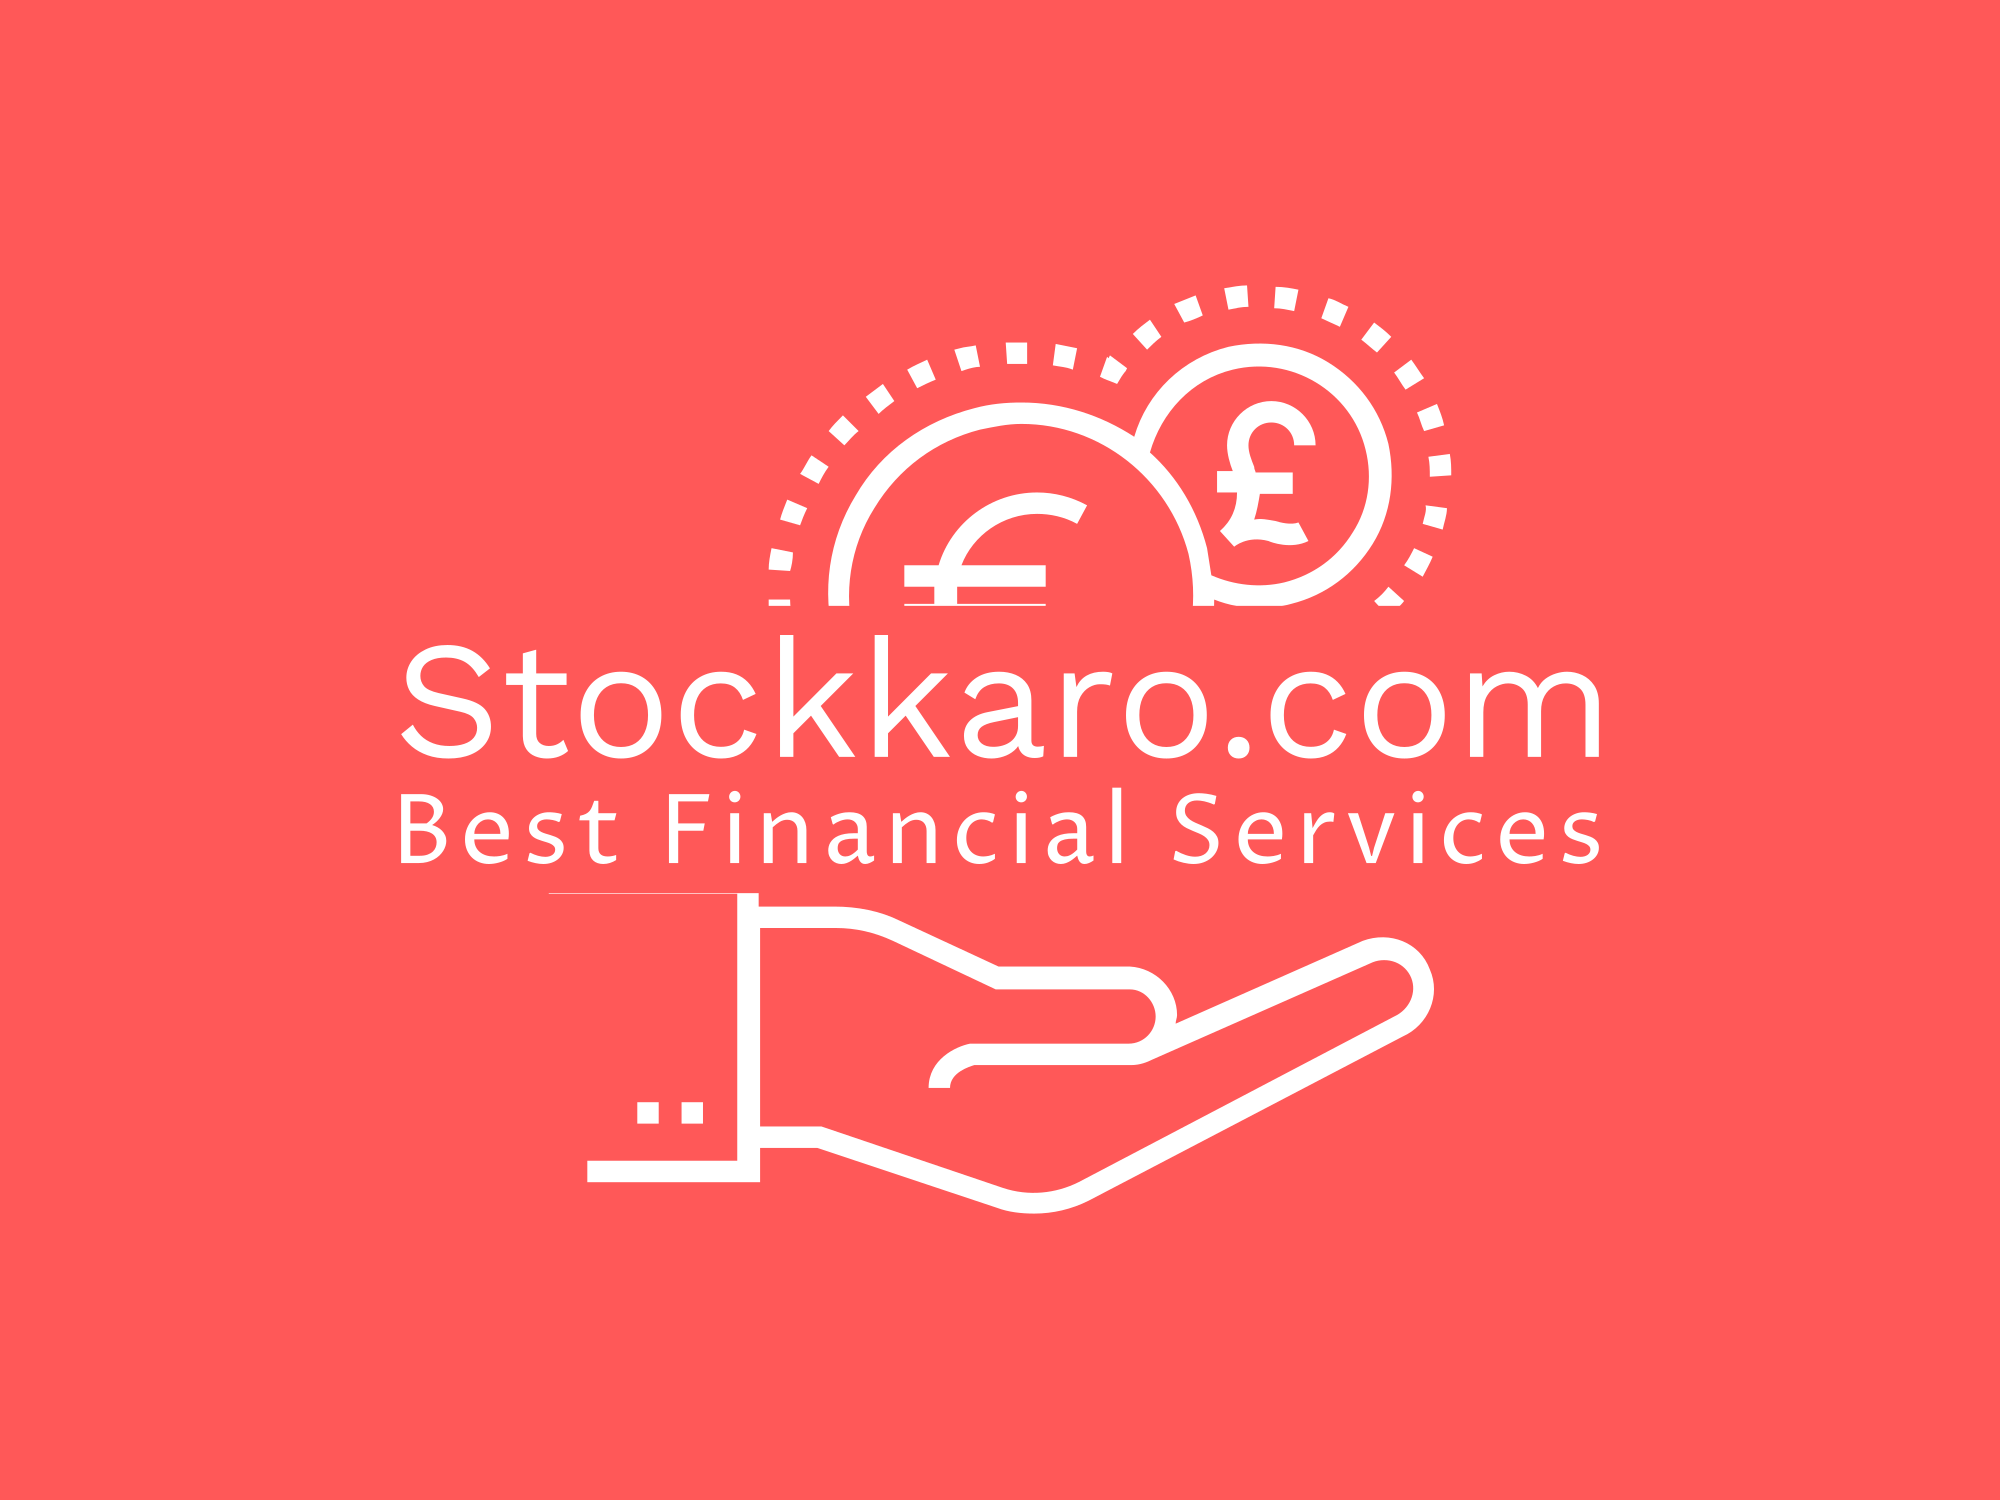 Stock Karo